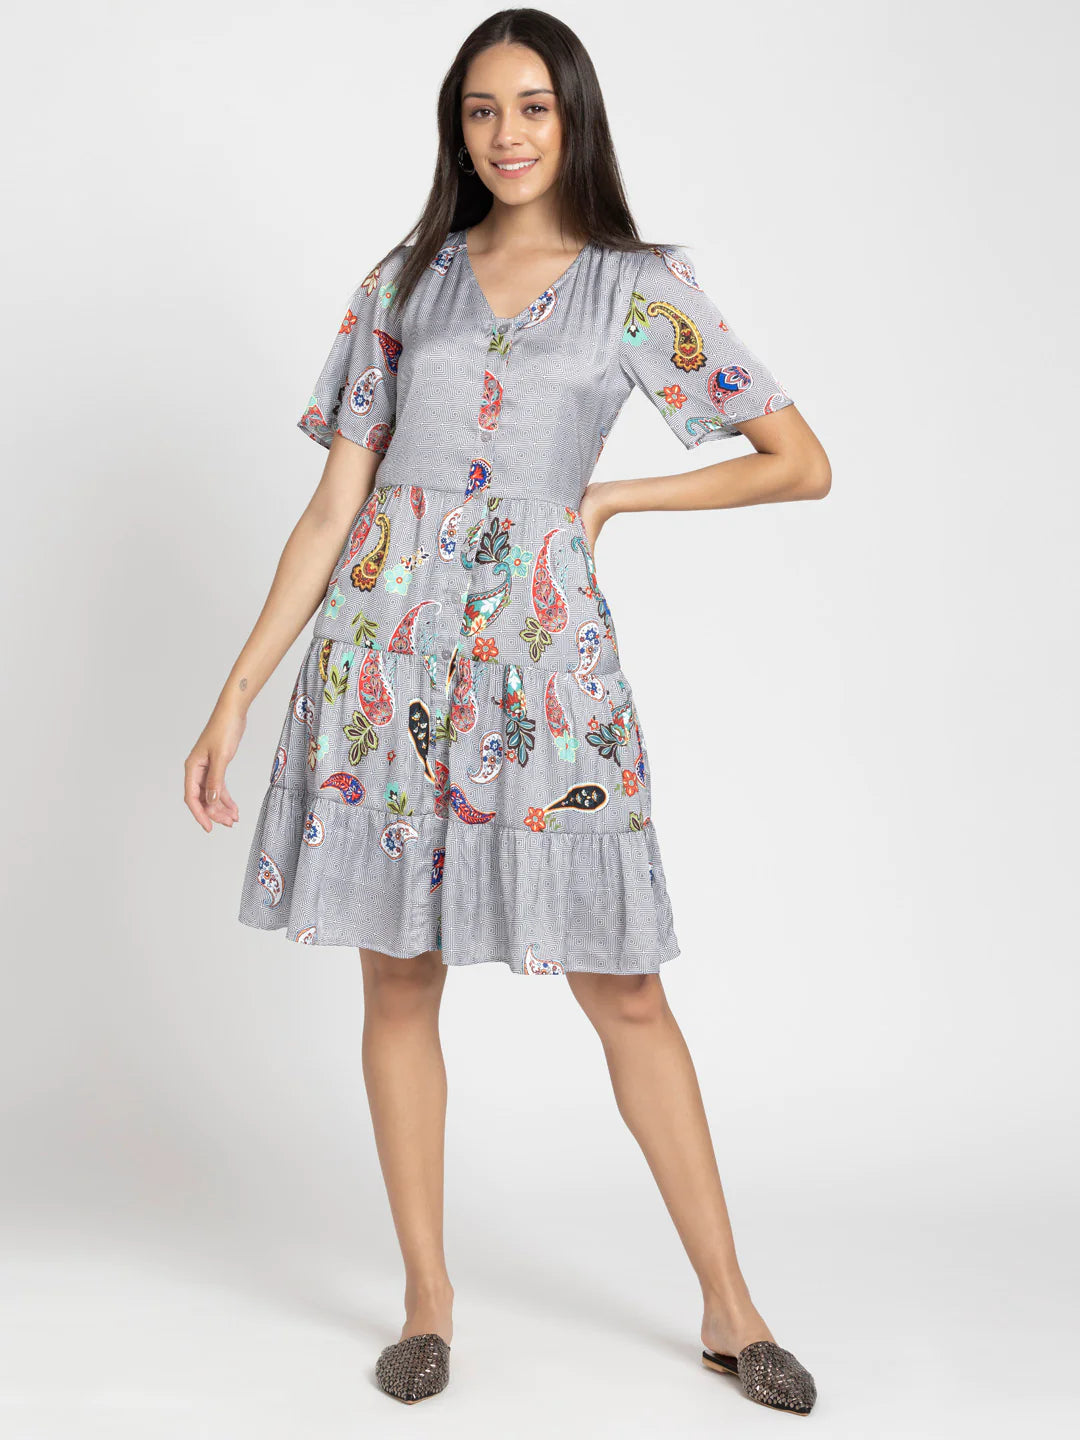 Paisley Modern Dress for Women | Paisley Elegance Knee-Length Dress